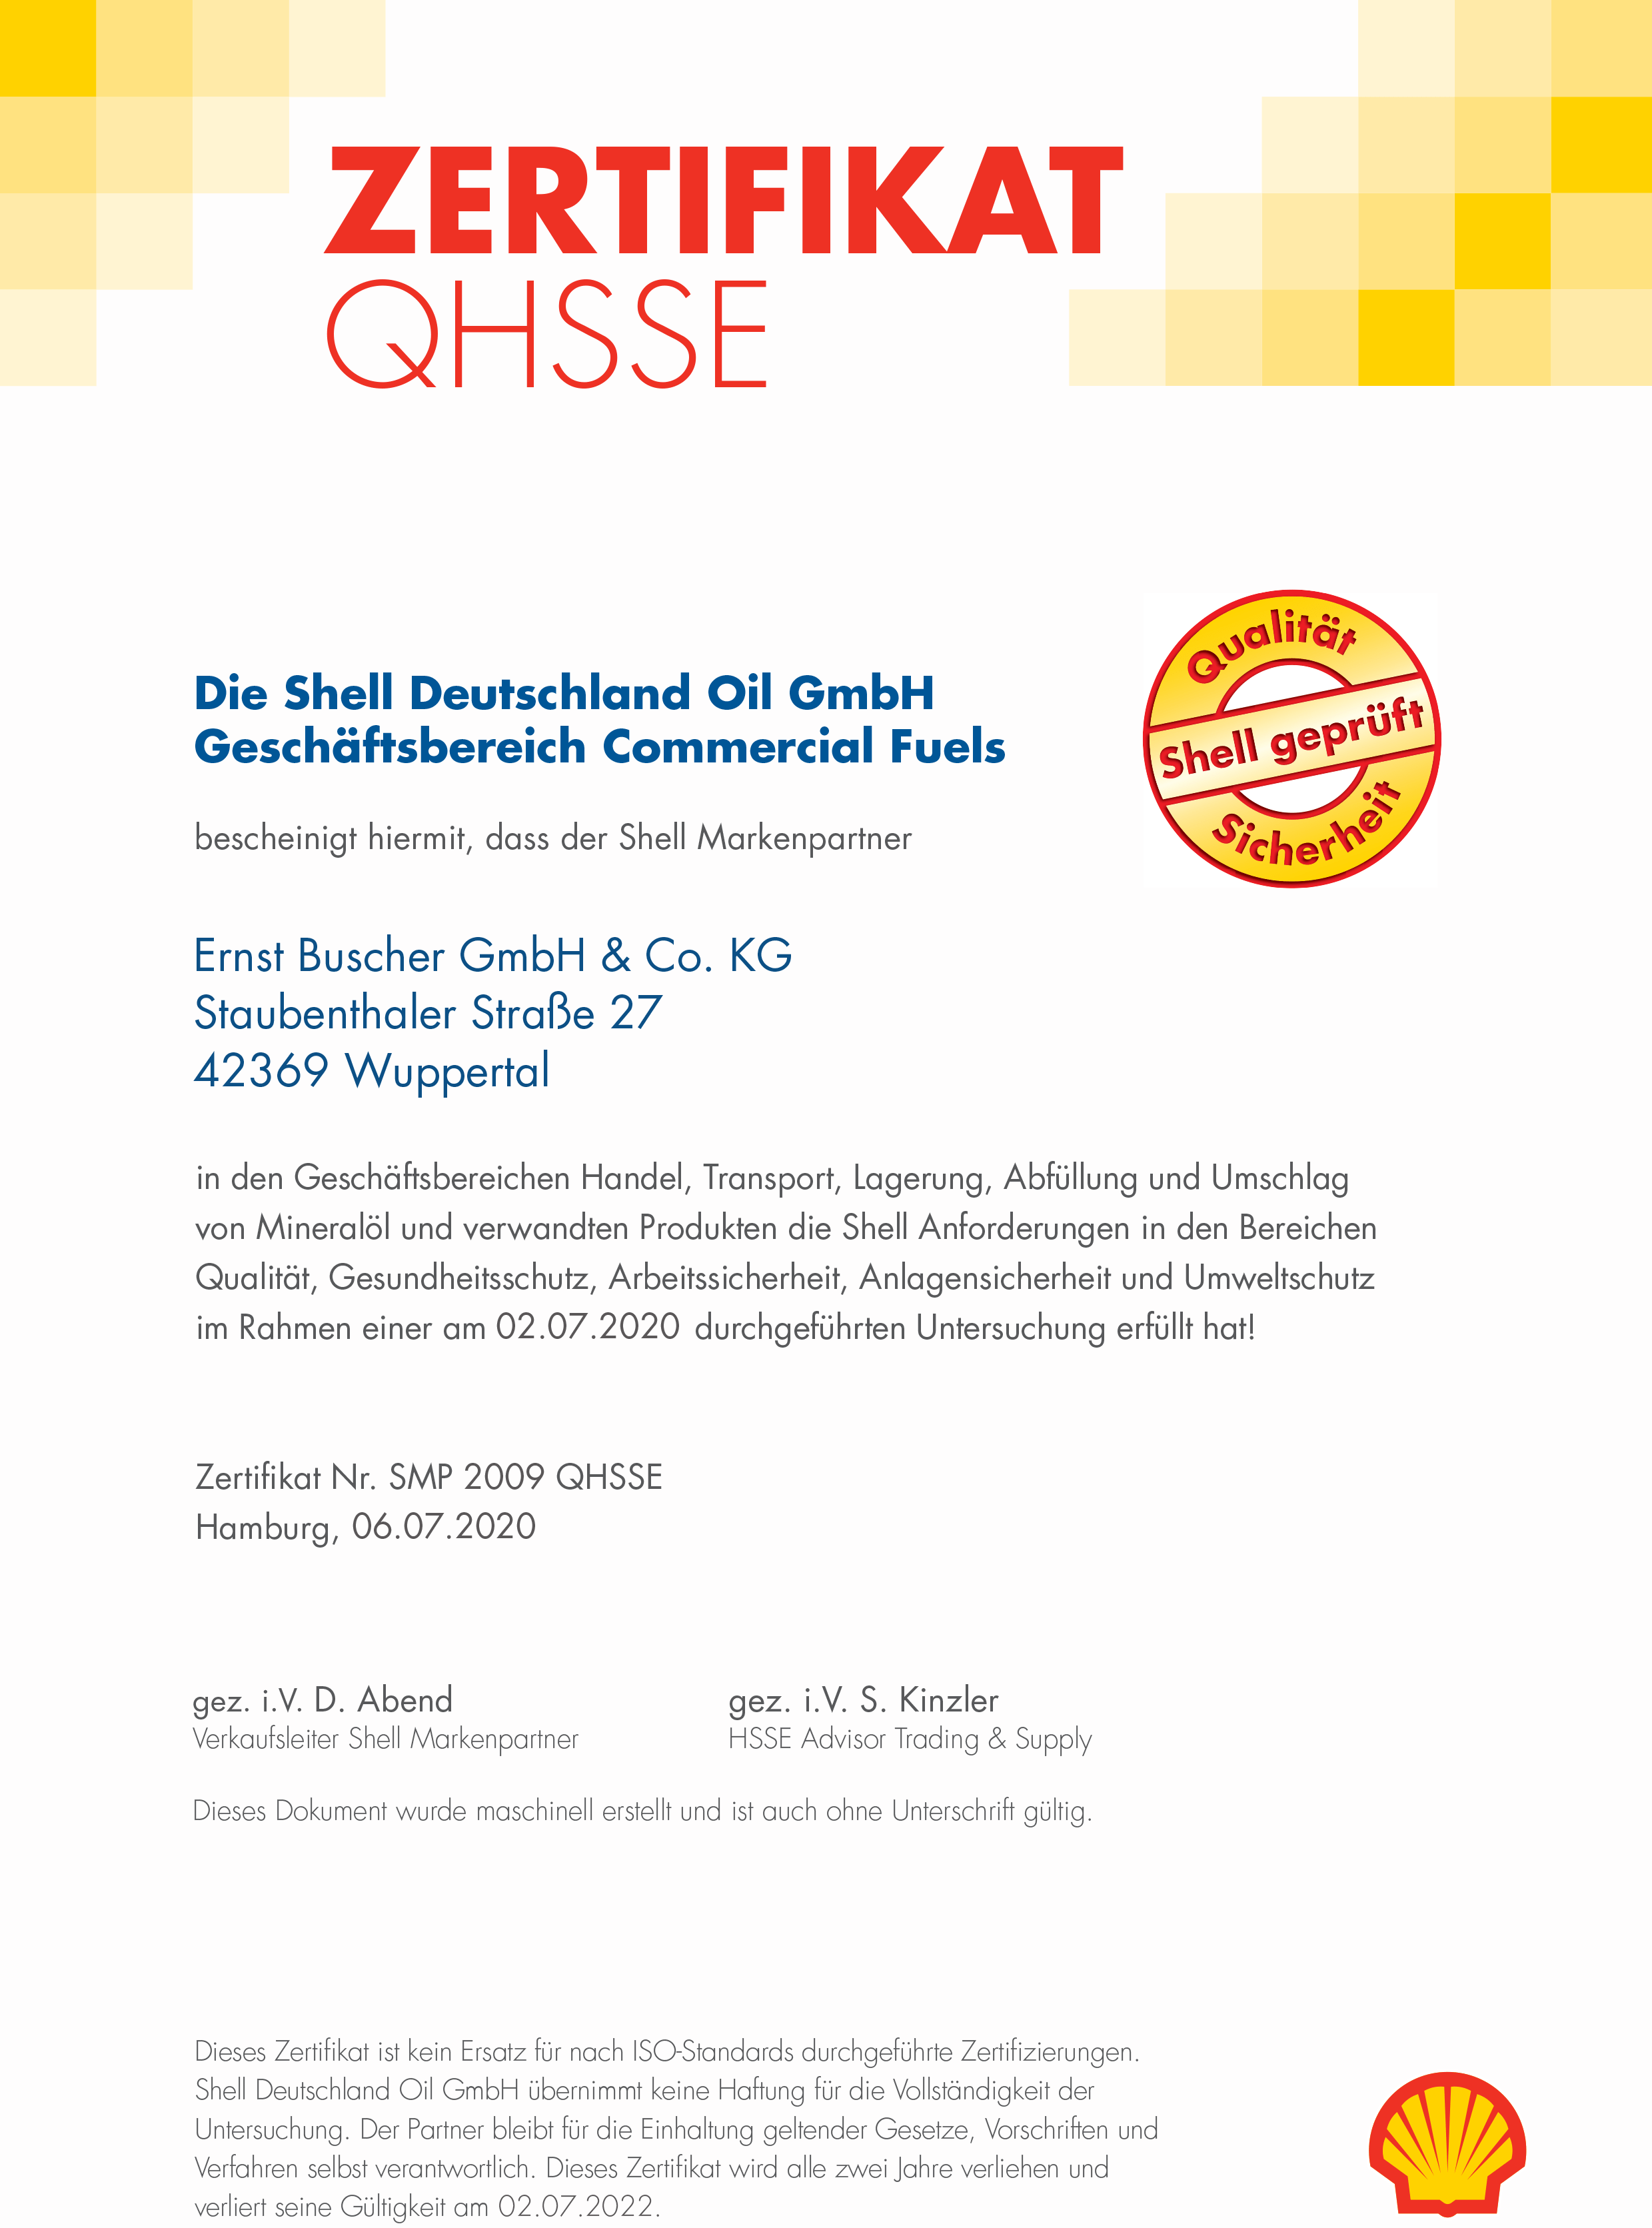 Zertifikat_QHSSE_Commercial_Fuels_Ernst_Buscher_GmbH_2020